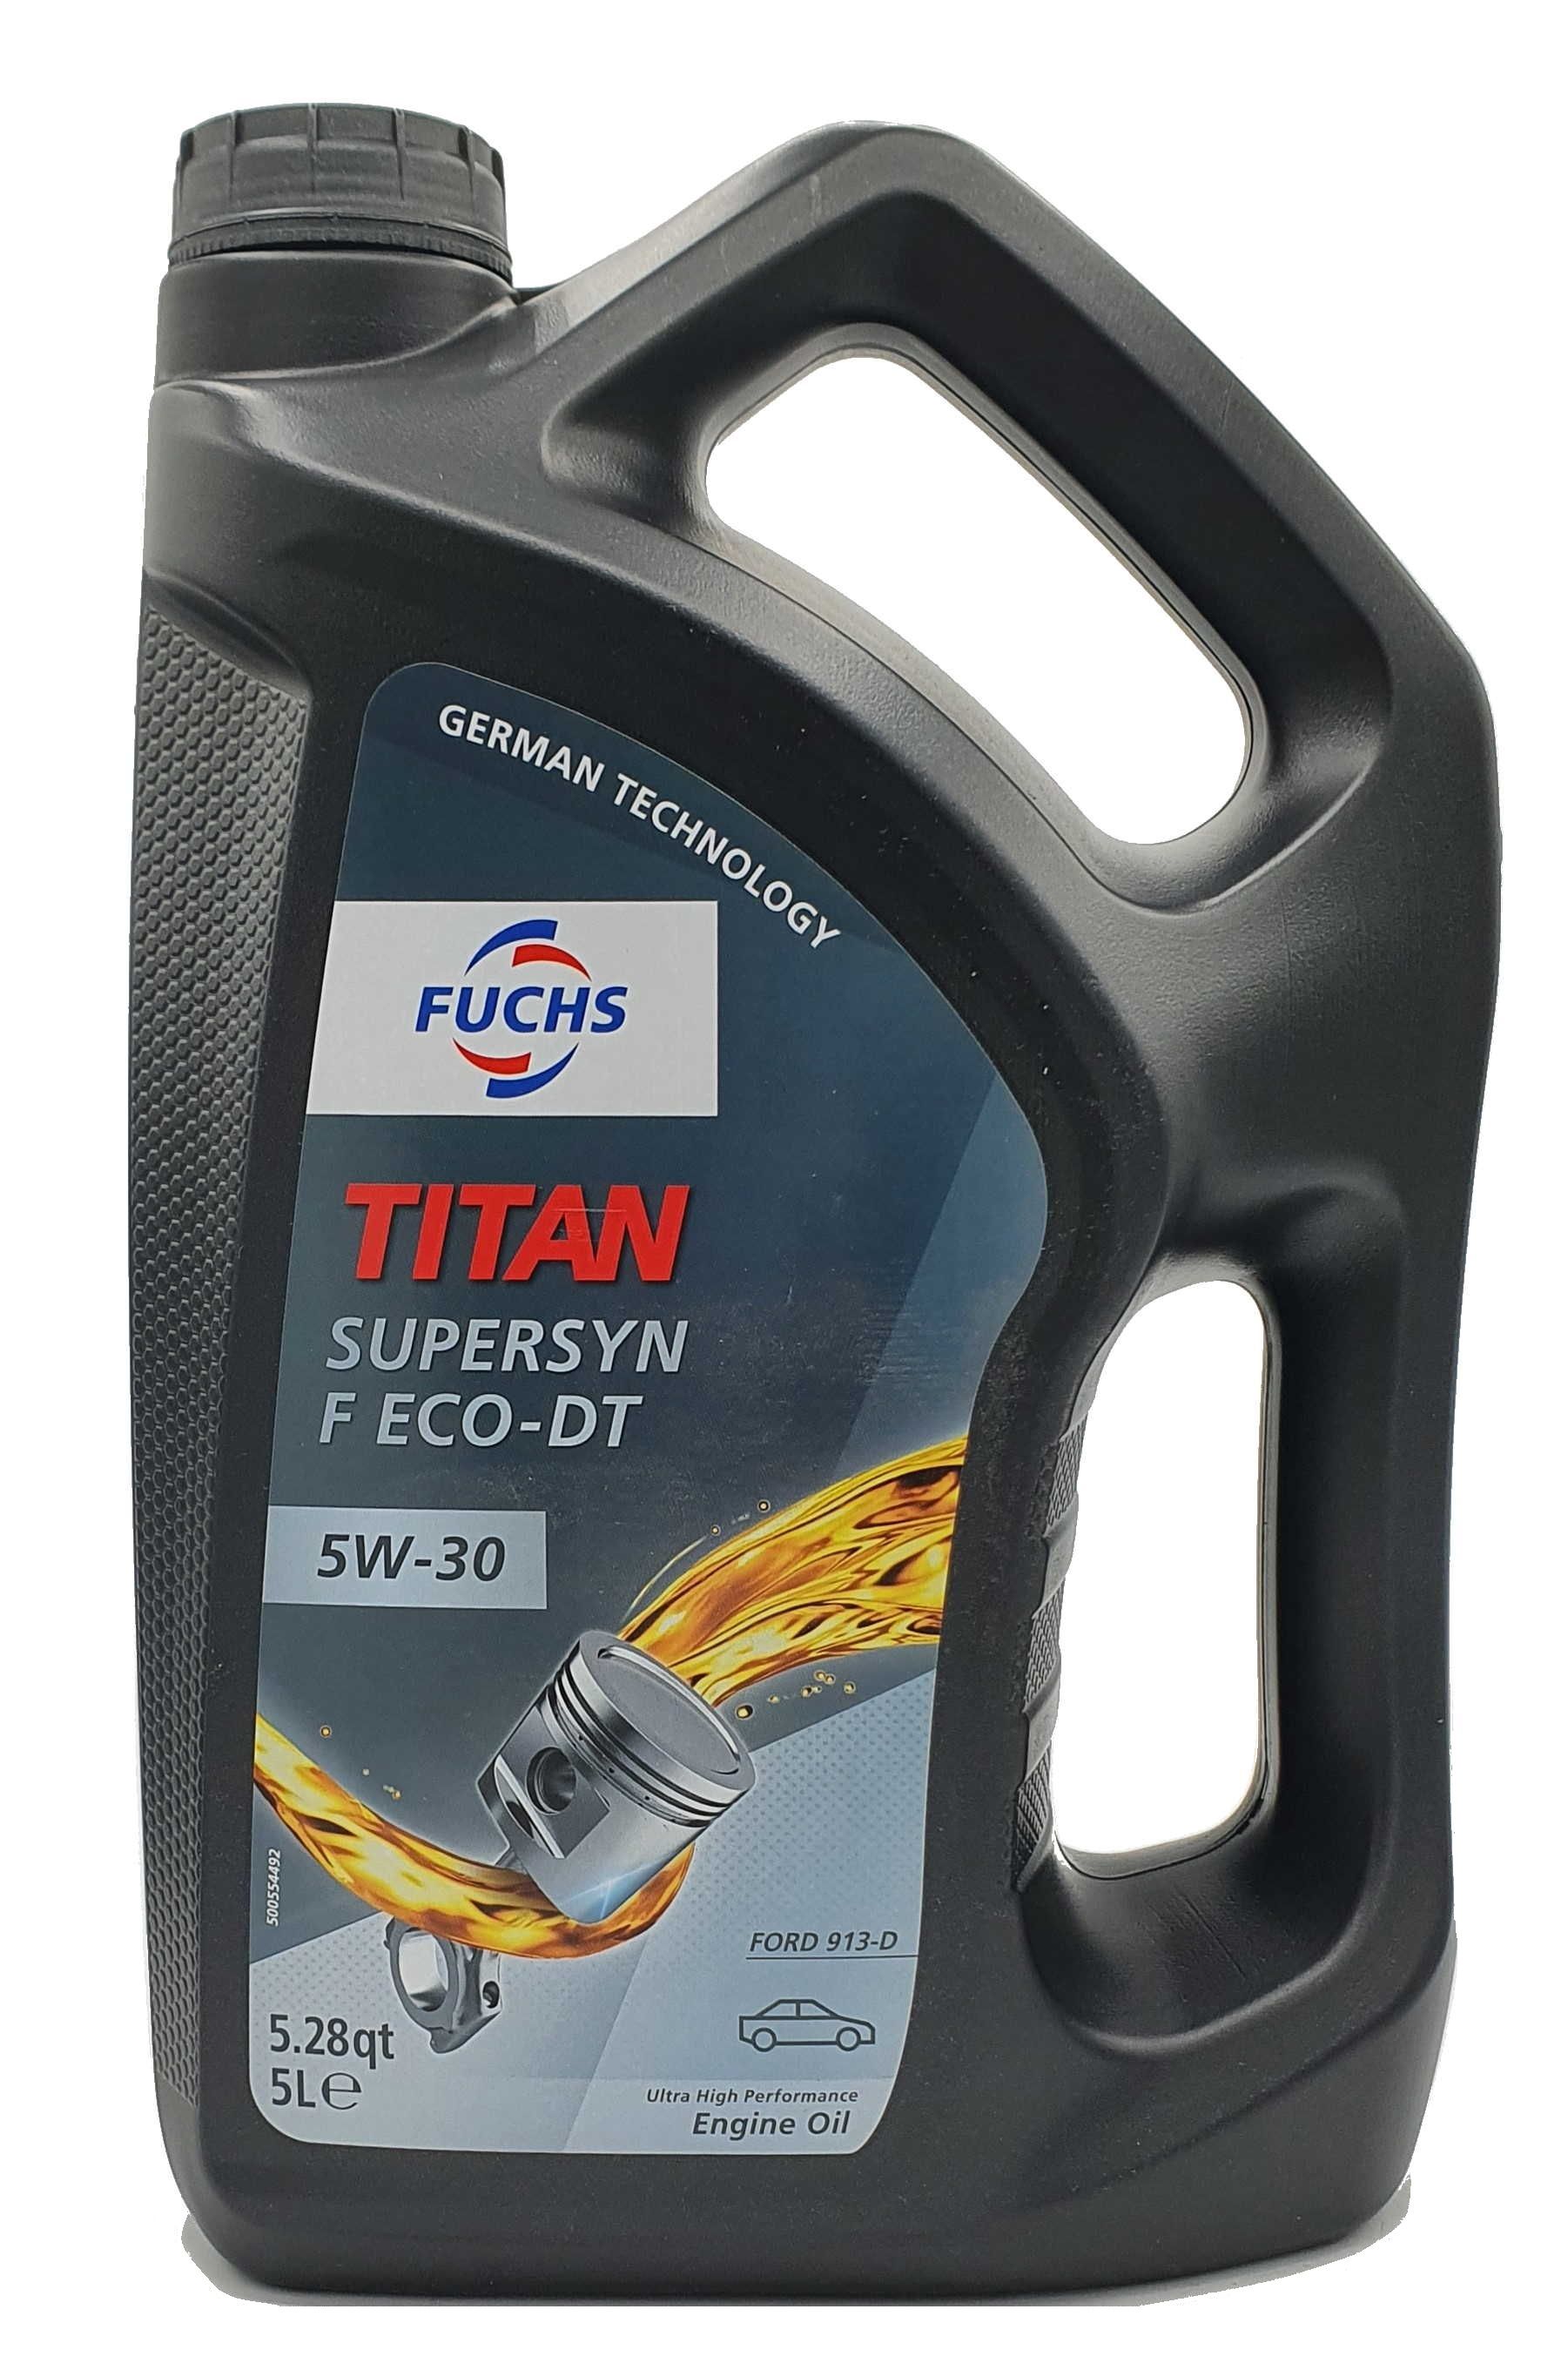 Fuchs Titan Supersyn F ECO-DT 5W-30 5 Liter